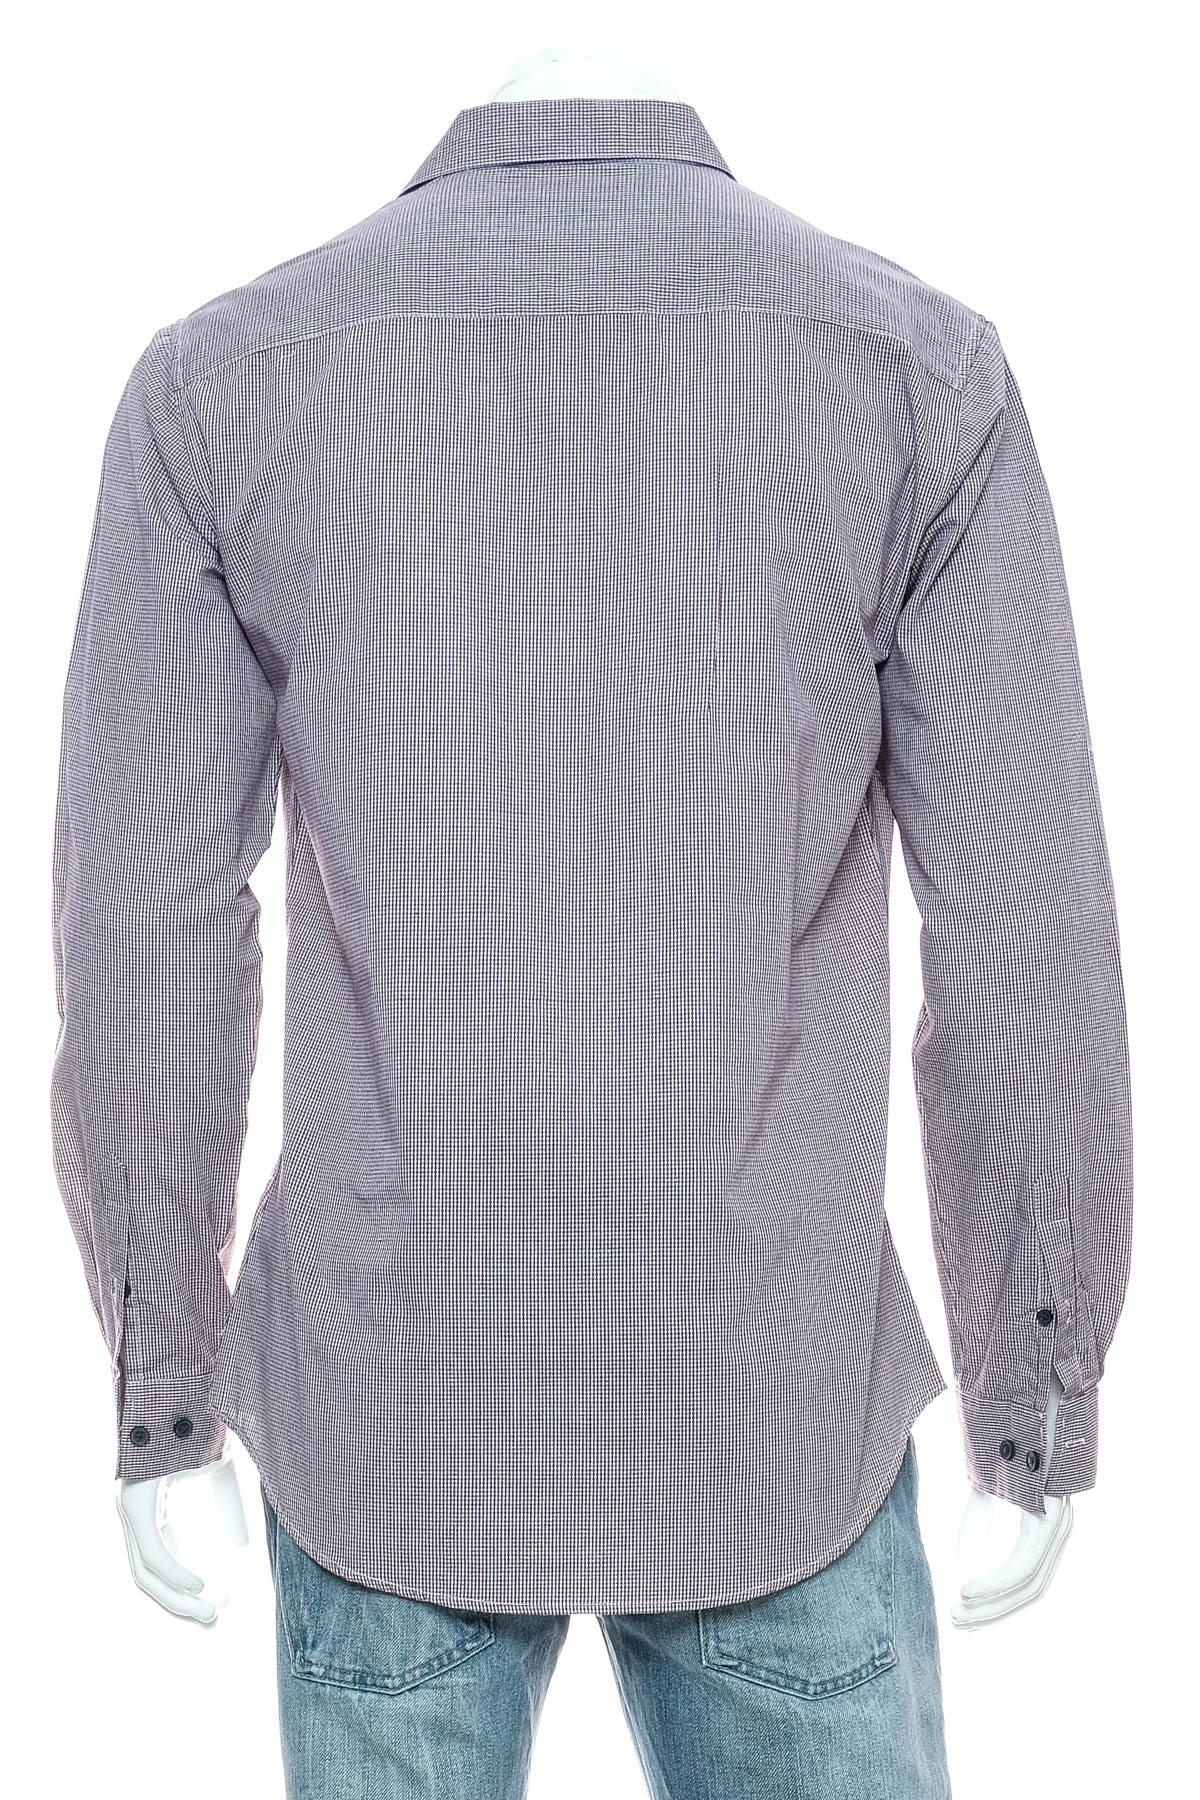 Ανδρικό πουκάμισο - COTTON:ON - 1